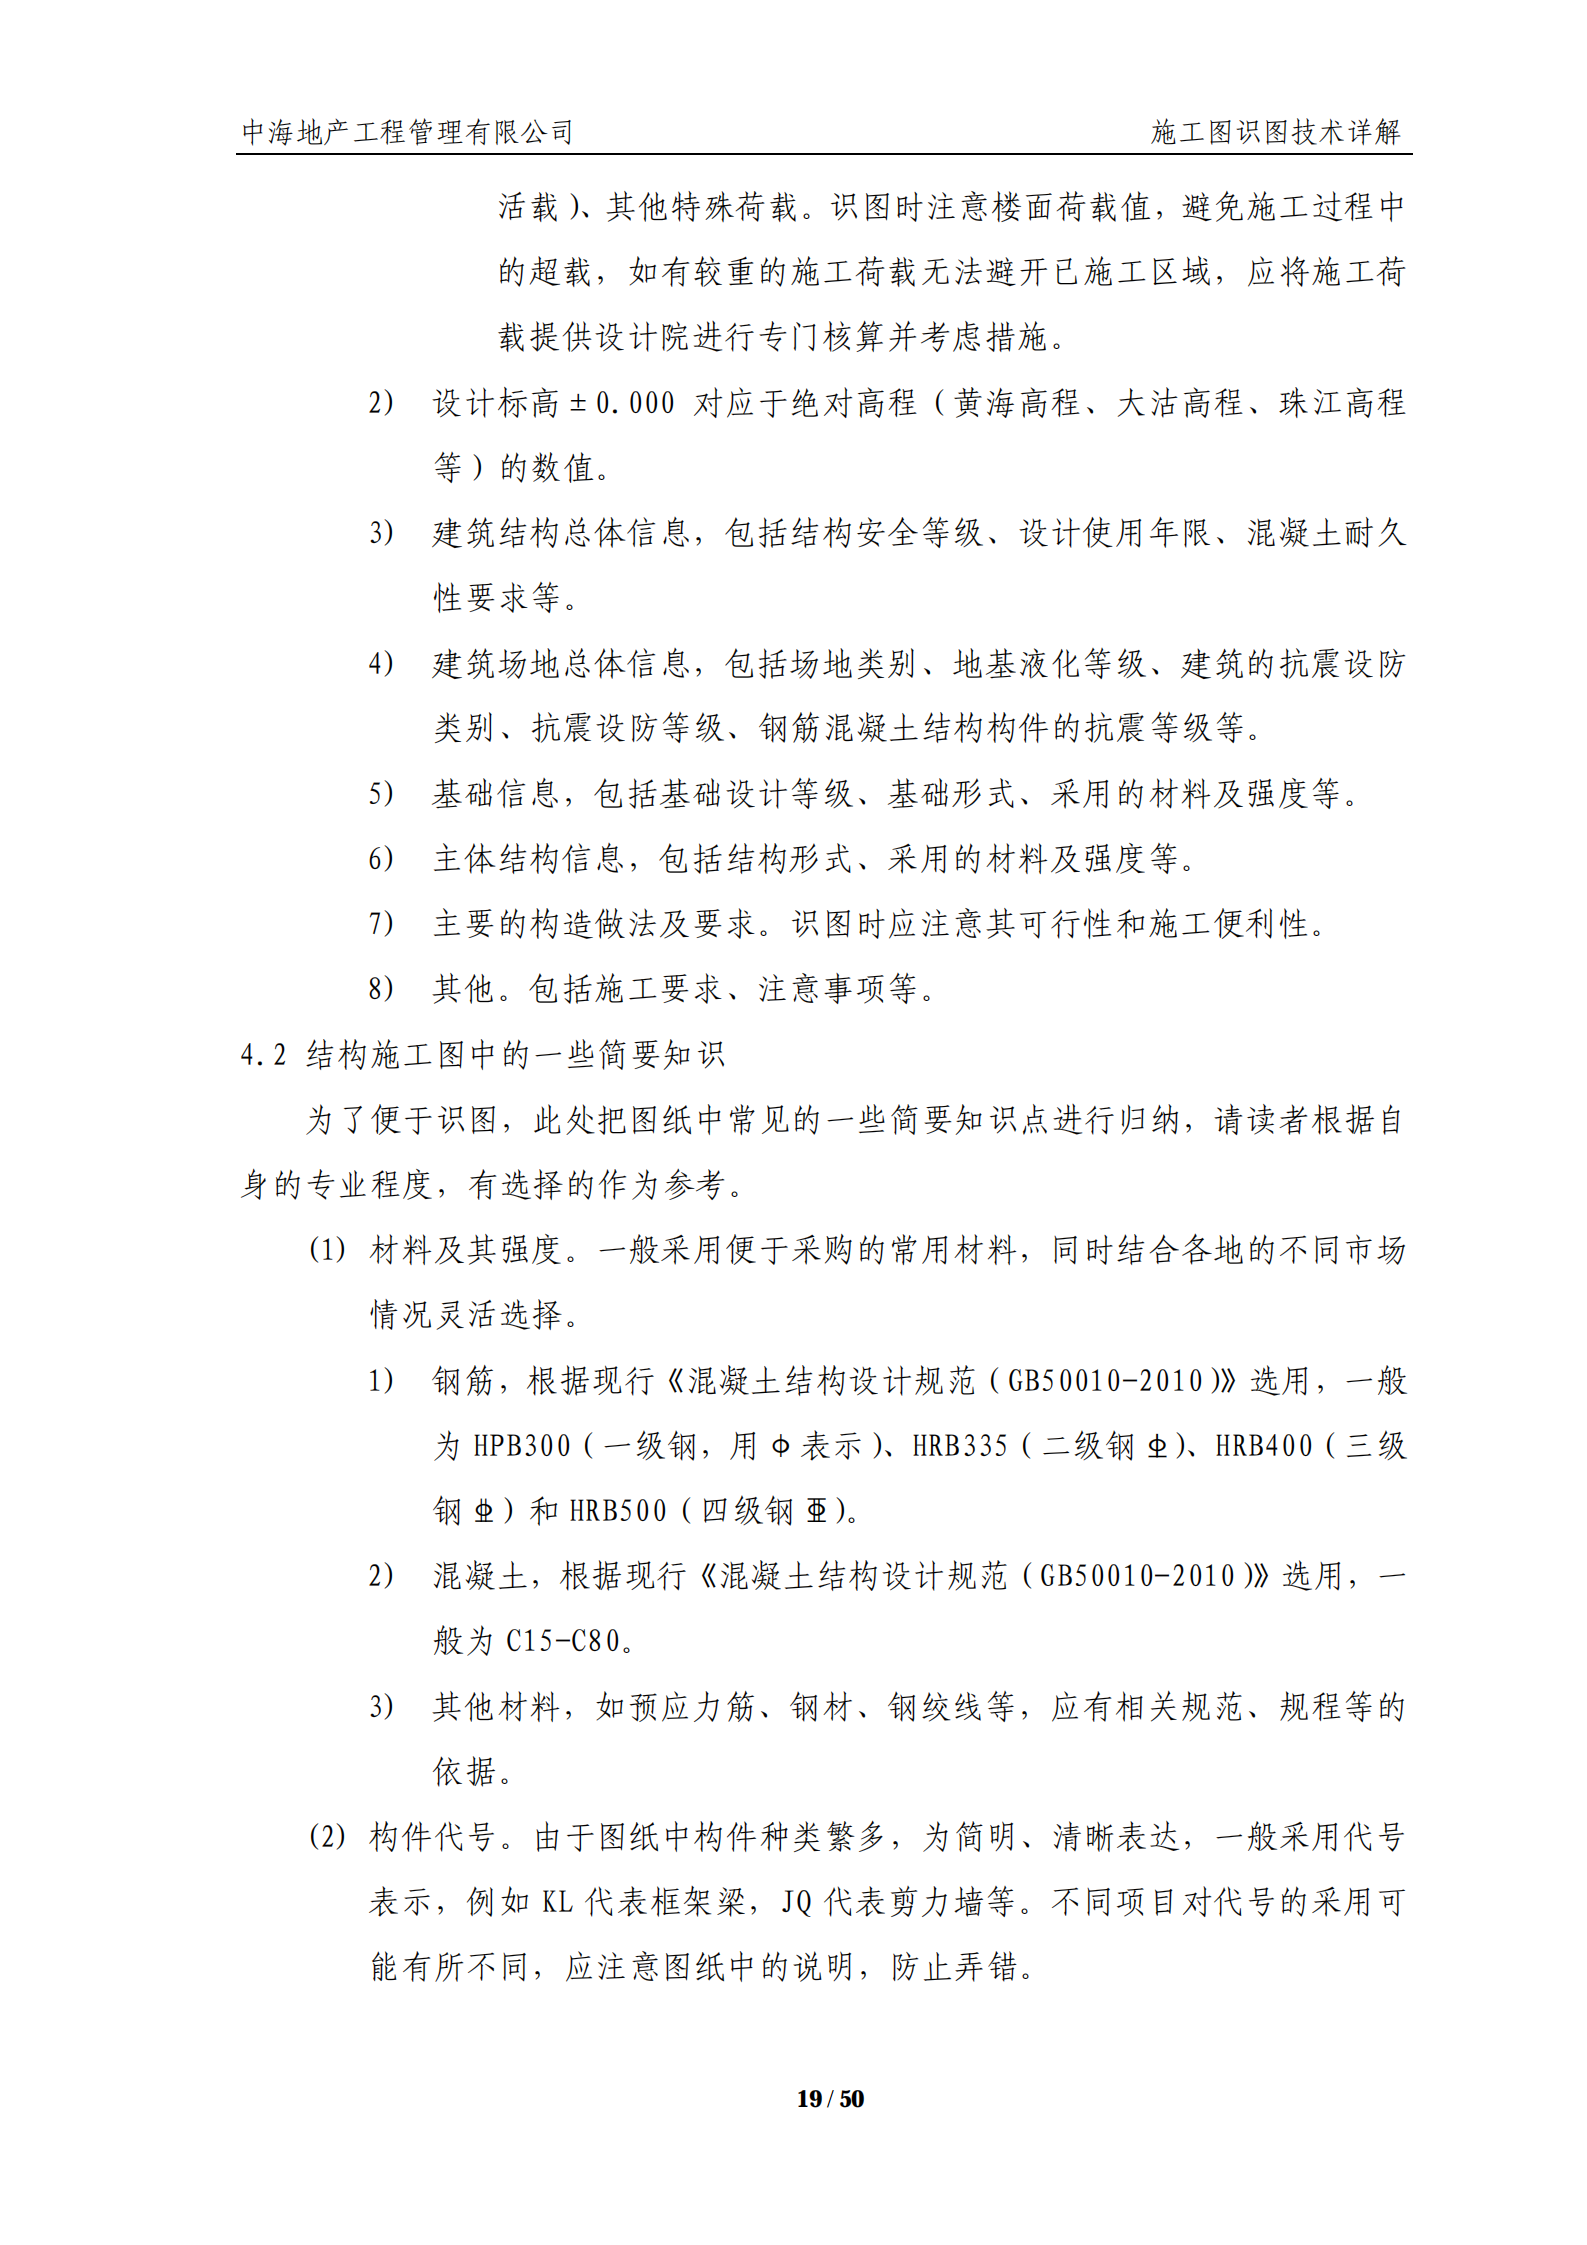 中海｜地产工程公司施工图识图技术详解（50页，包含机电）